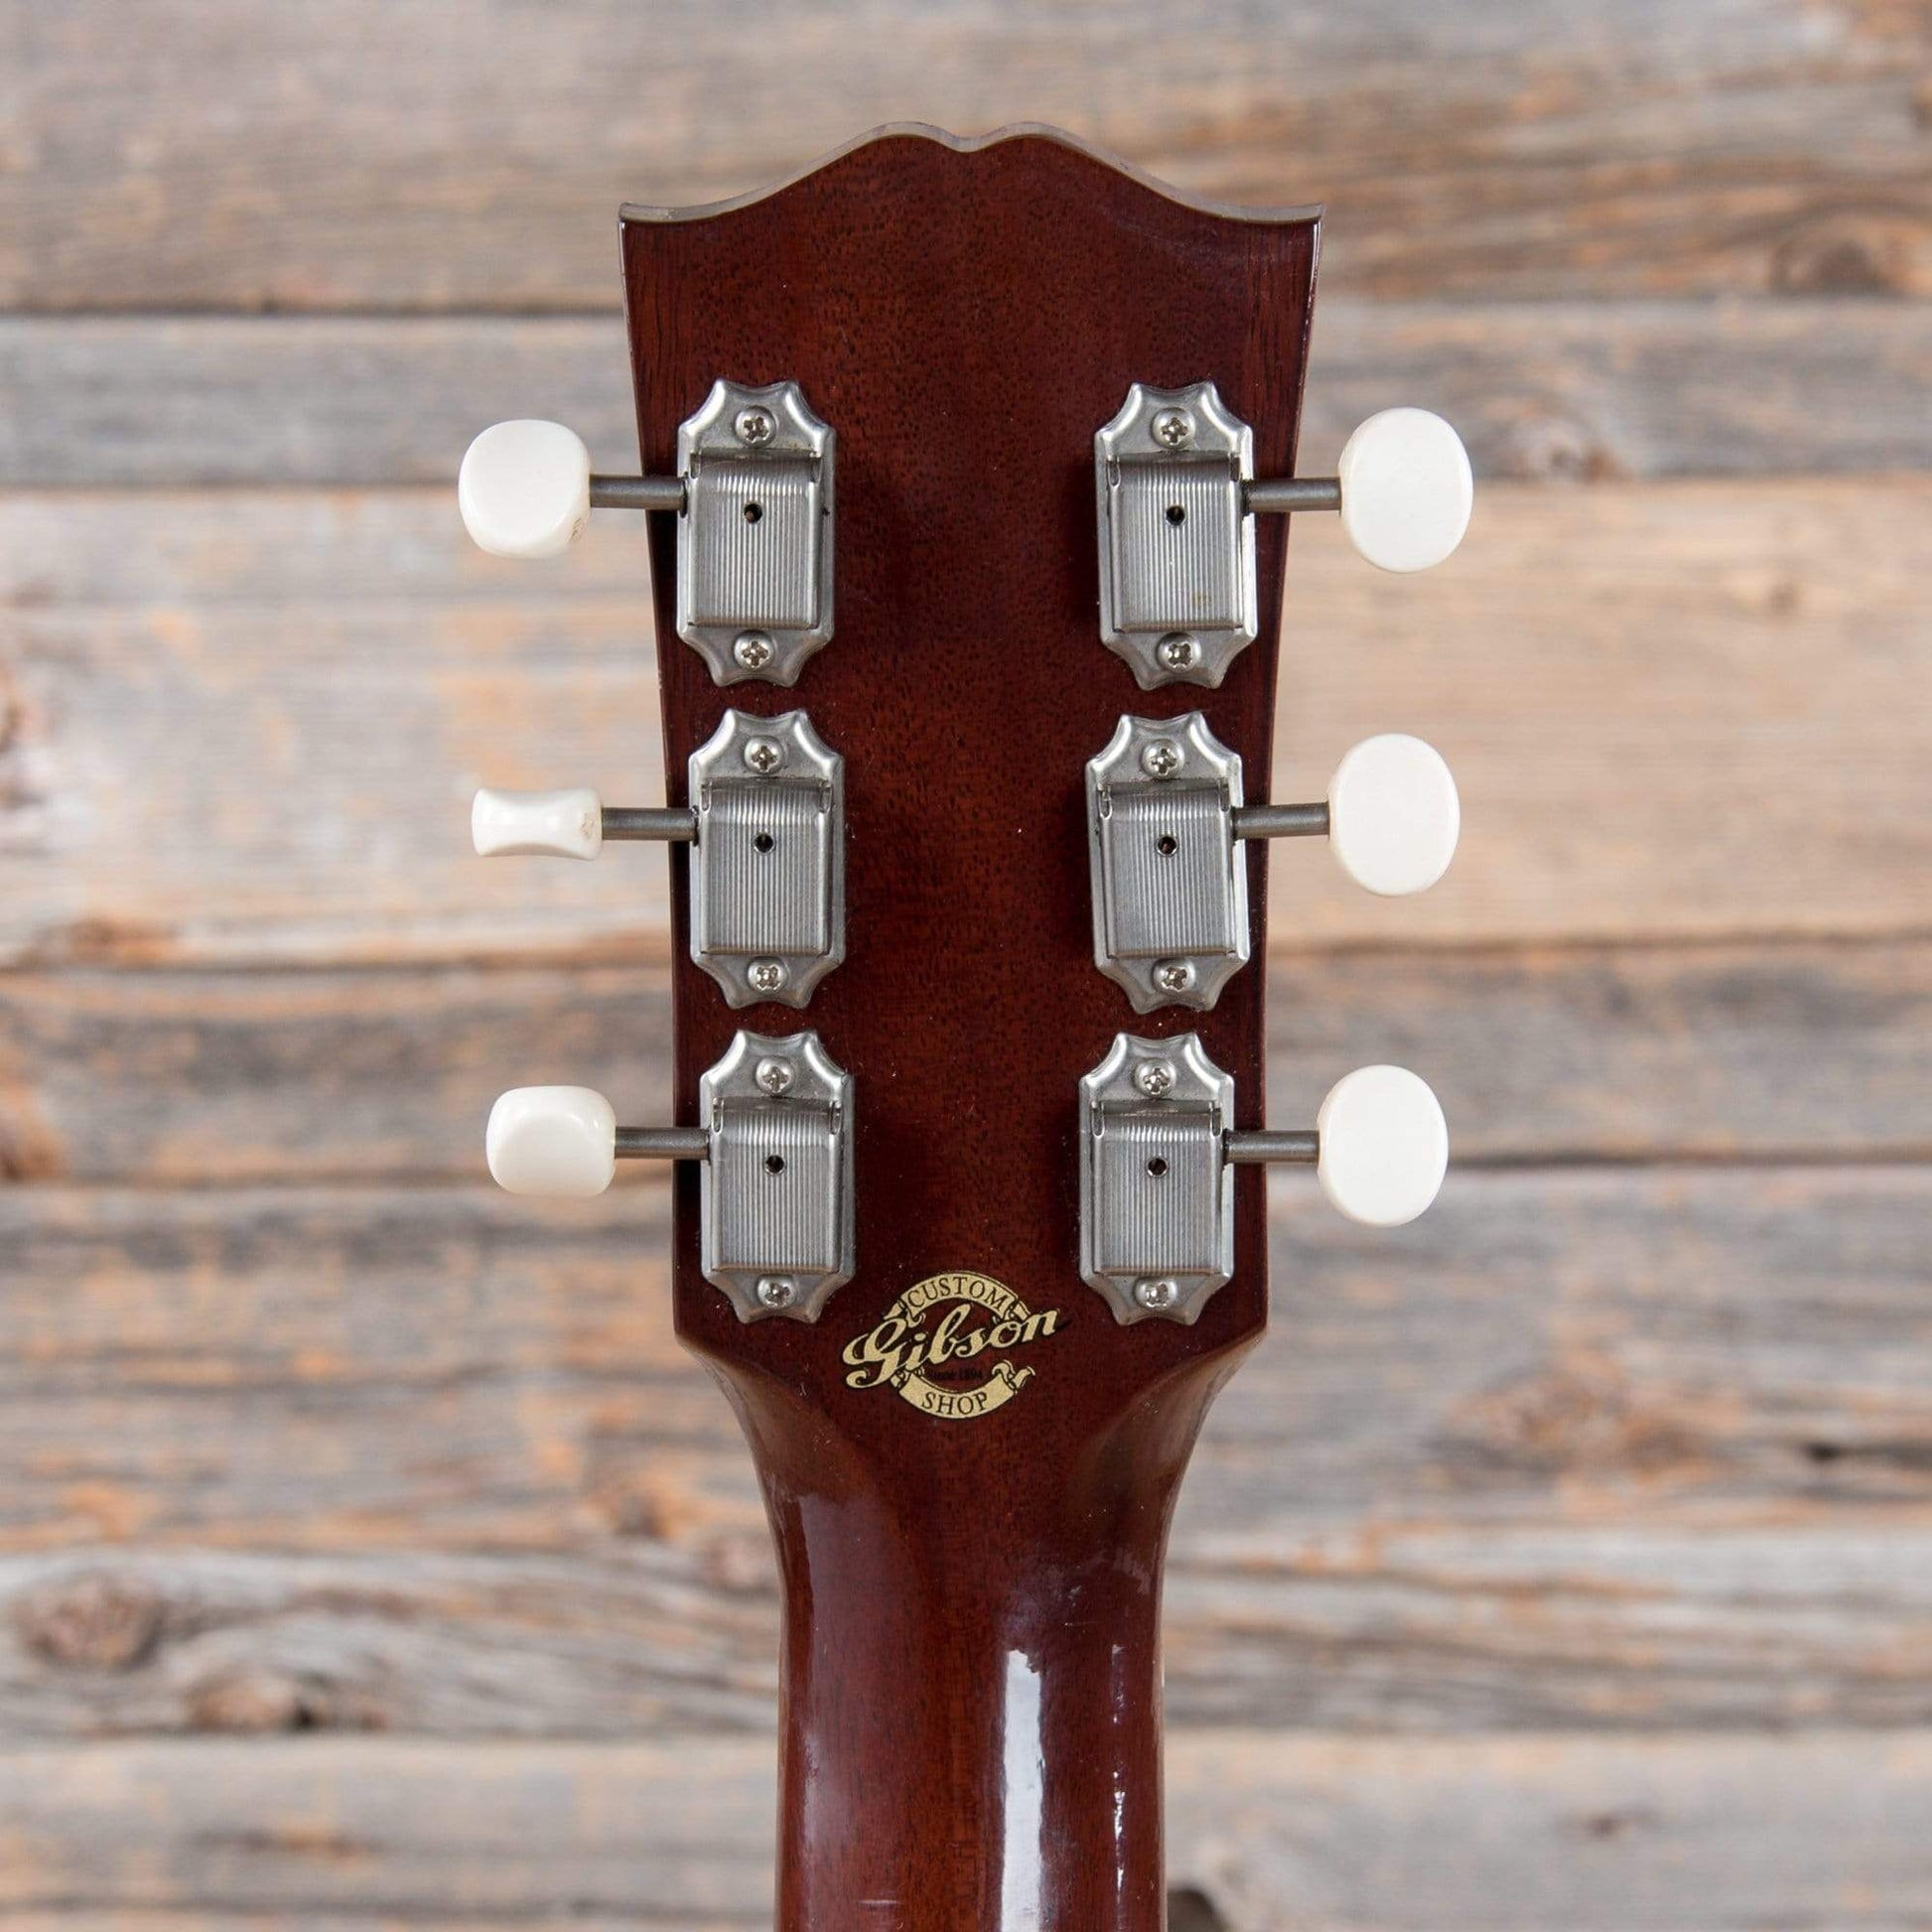 Gibson Montana J-45 Vintage Vintage Sunburst 2018 Acoustic Guitars / Dreadnought